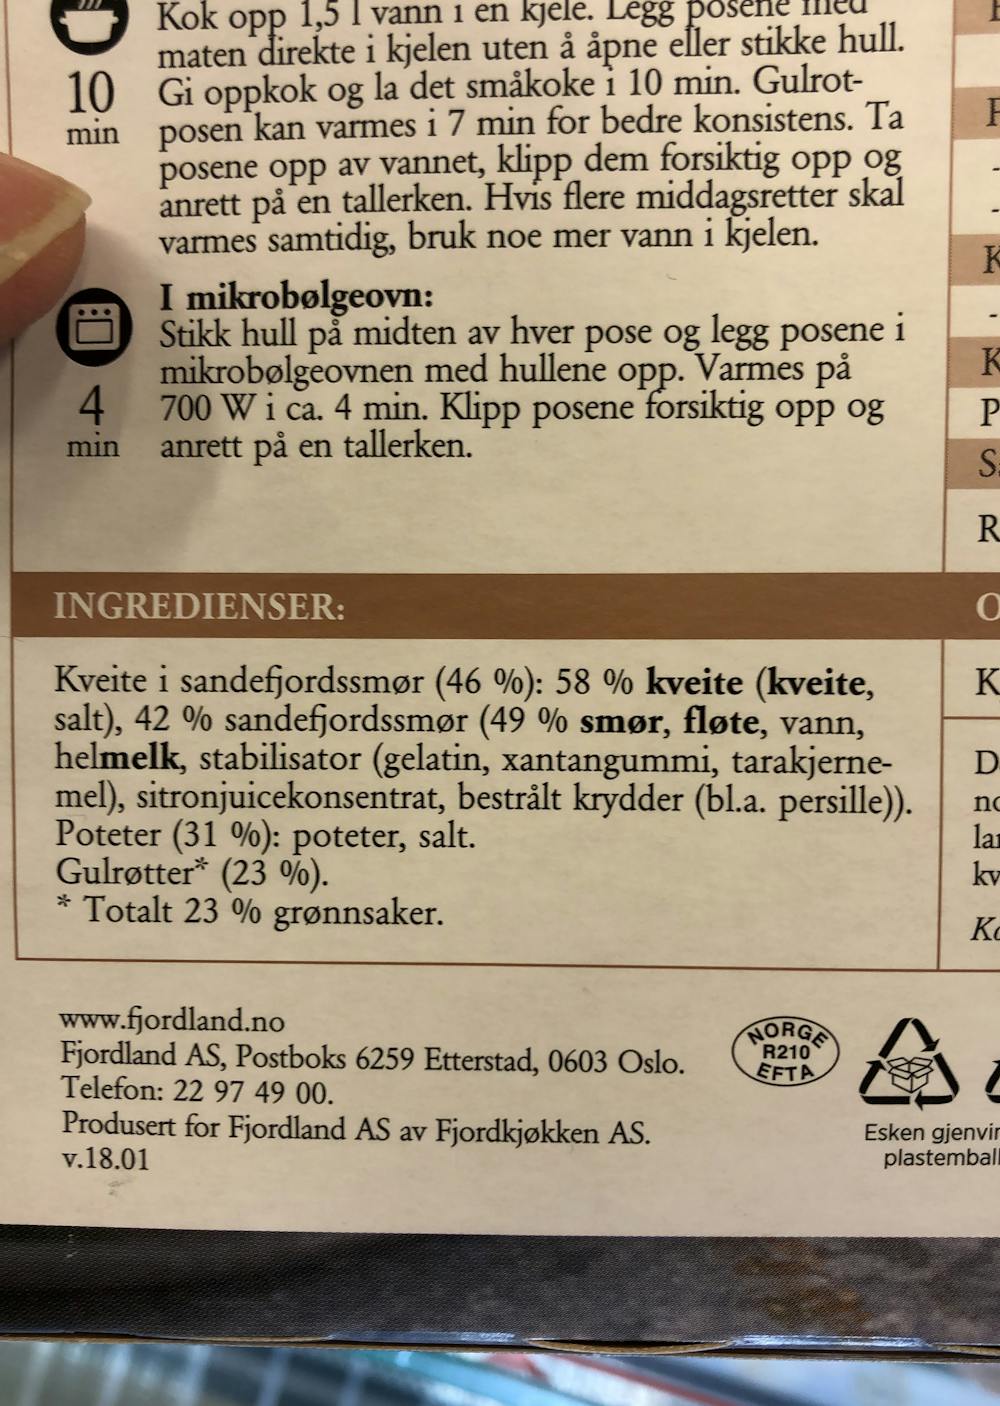 Ingredienslisten til Kveite med sandefjordssmør, gulrøtter og poteter, Fjordland